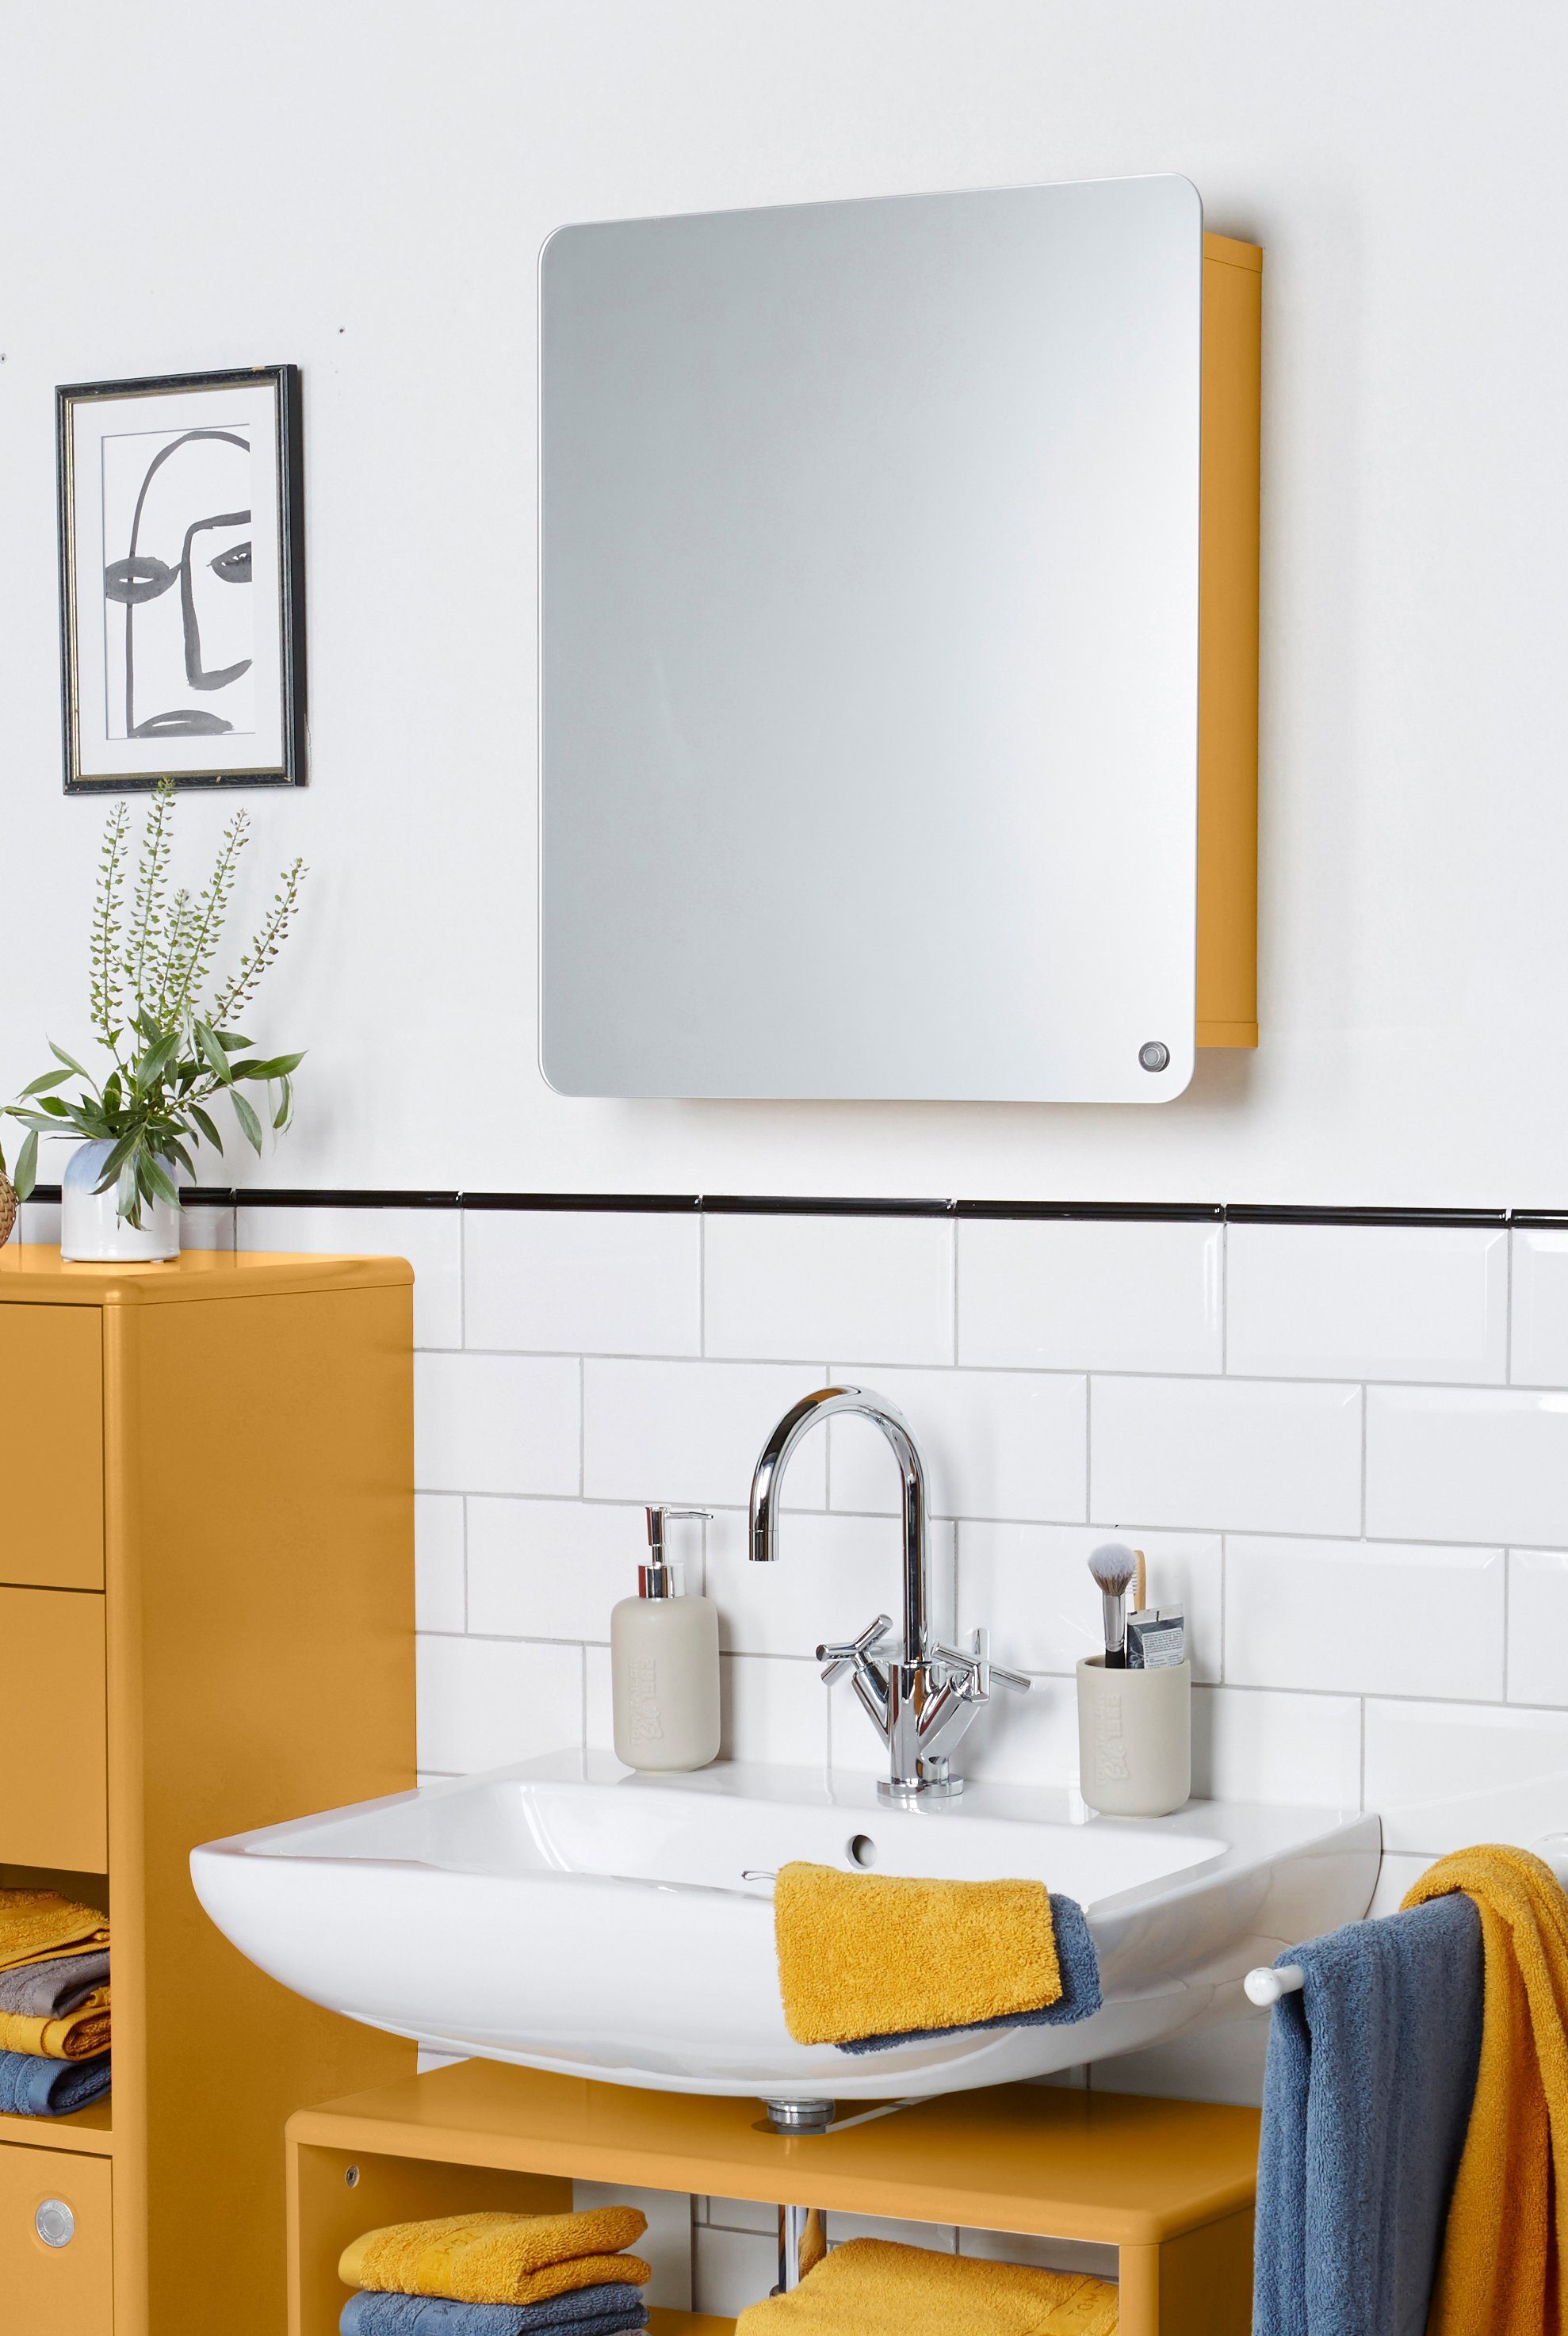 Farben, mit Tür - - aus in Mirror Tür Ecken, mit HOME seidenmatt lackiert mustard029 Small COLOR gerundeten Badspiegel Stauraum, vielen TAILOR TOM MDF BATH mit